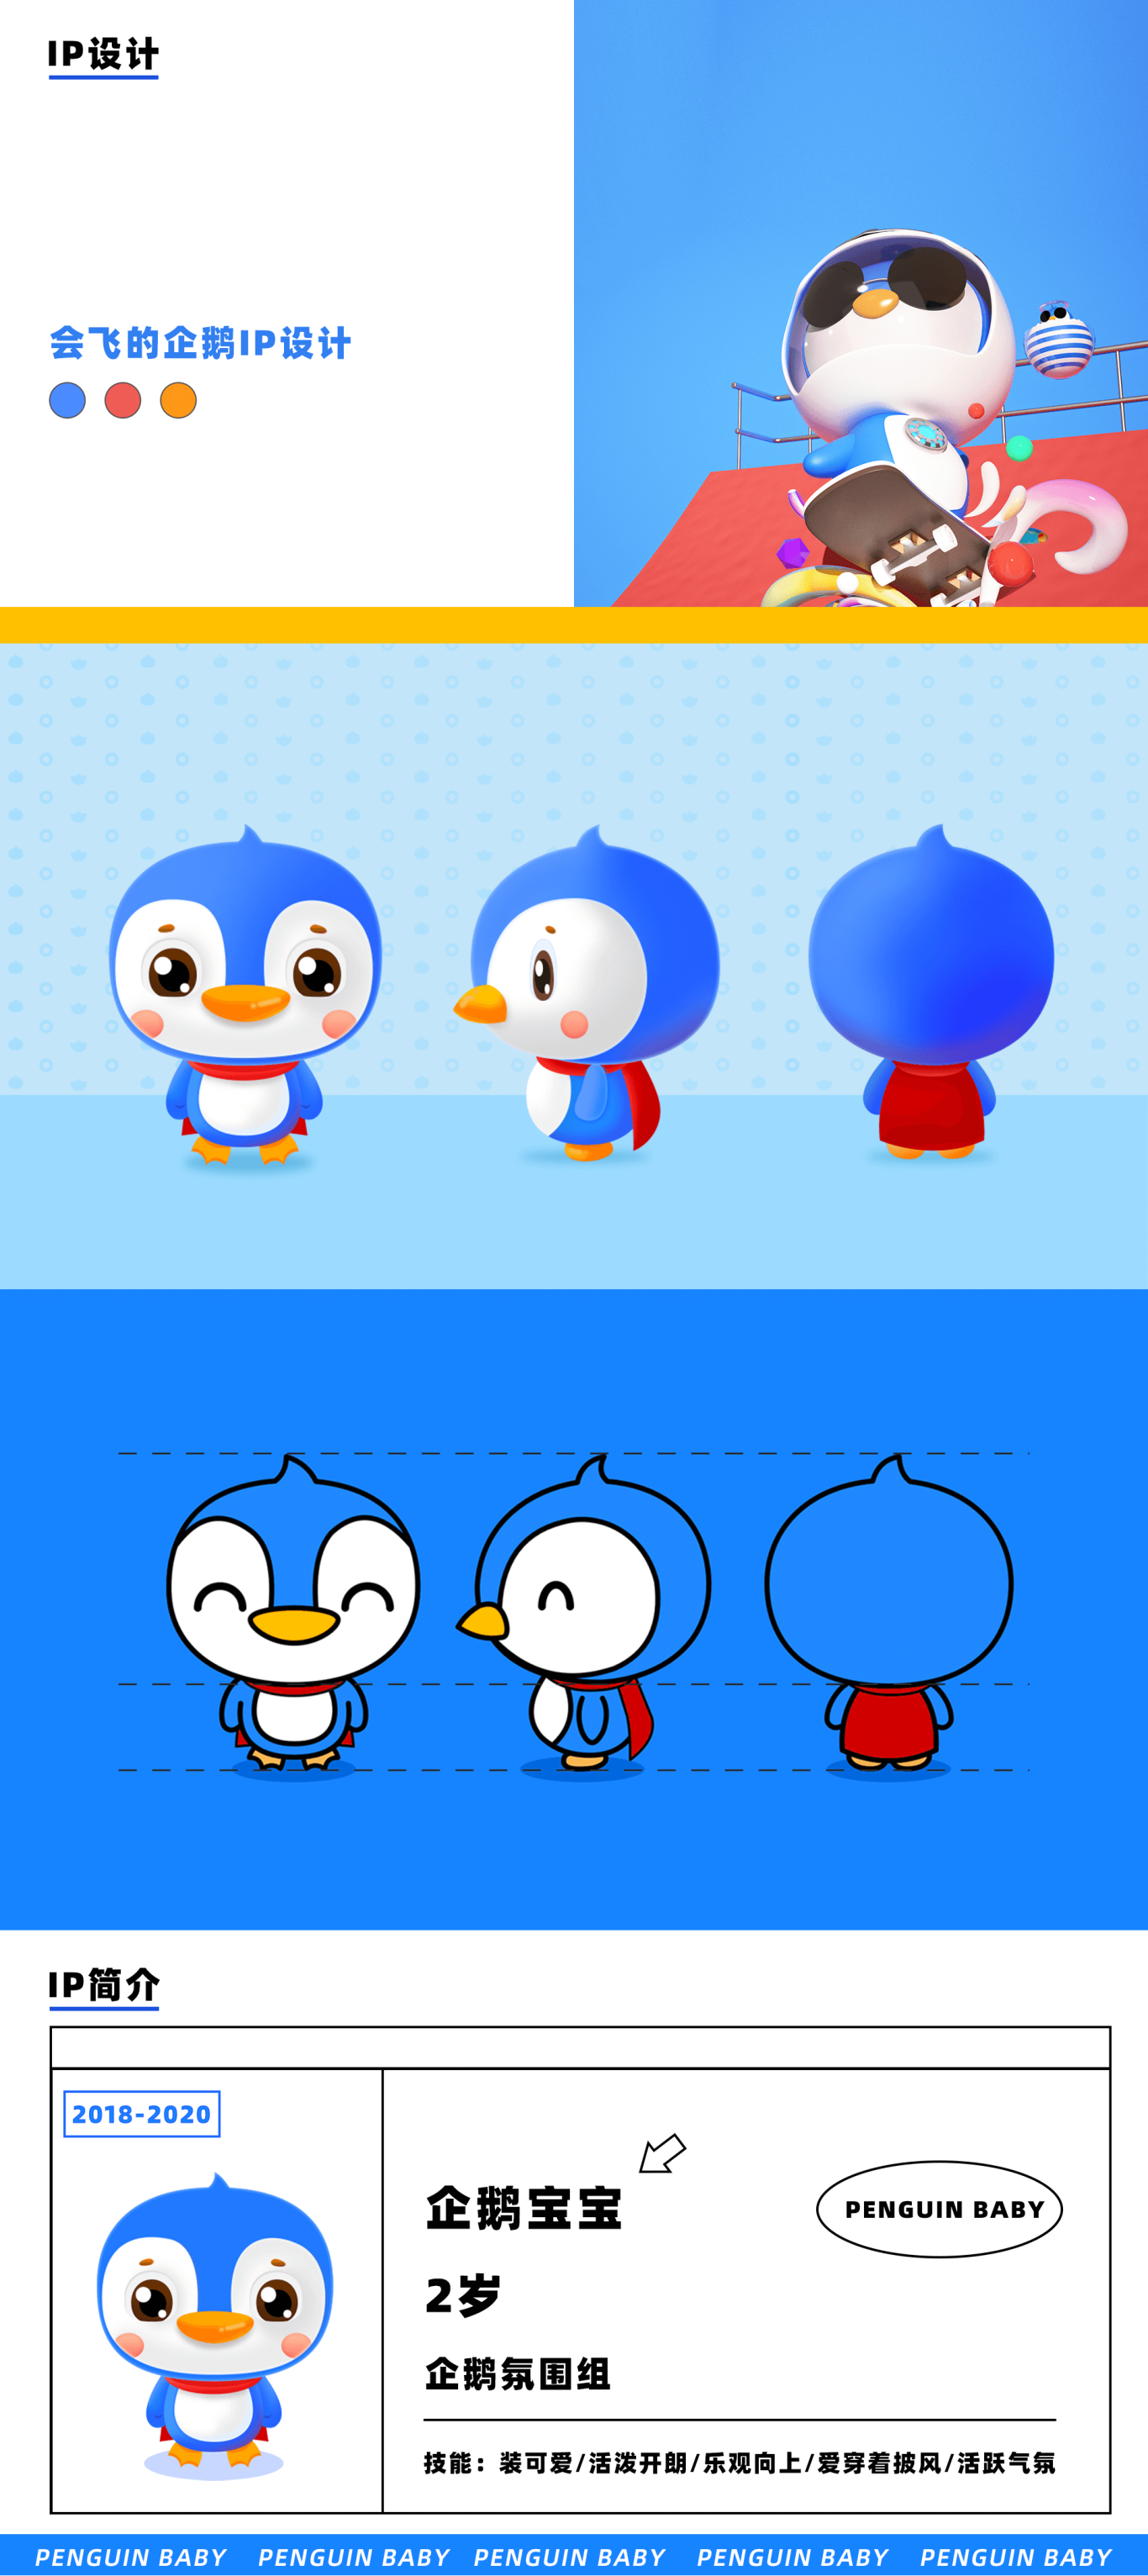 企鵝共享IP之企鵝寶寶吉祥物設計圖0